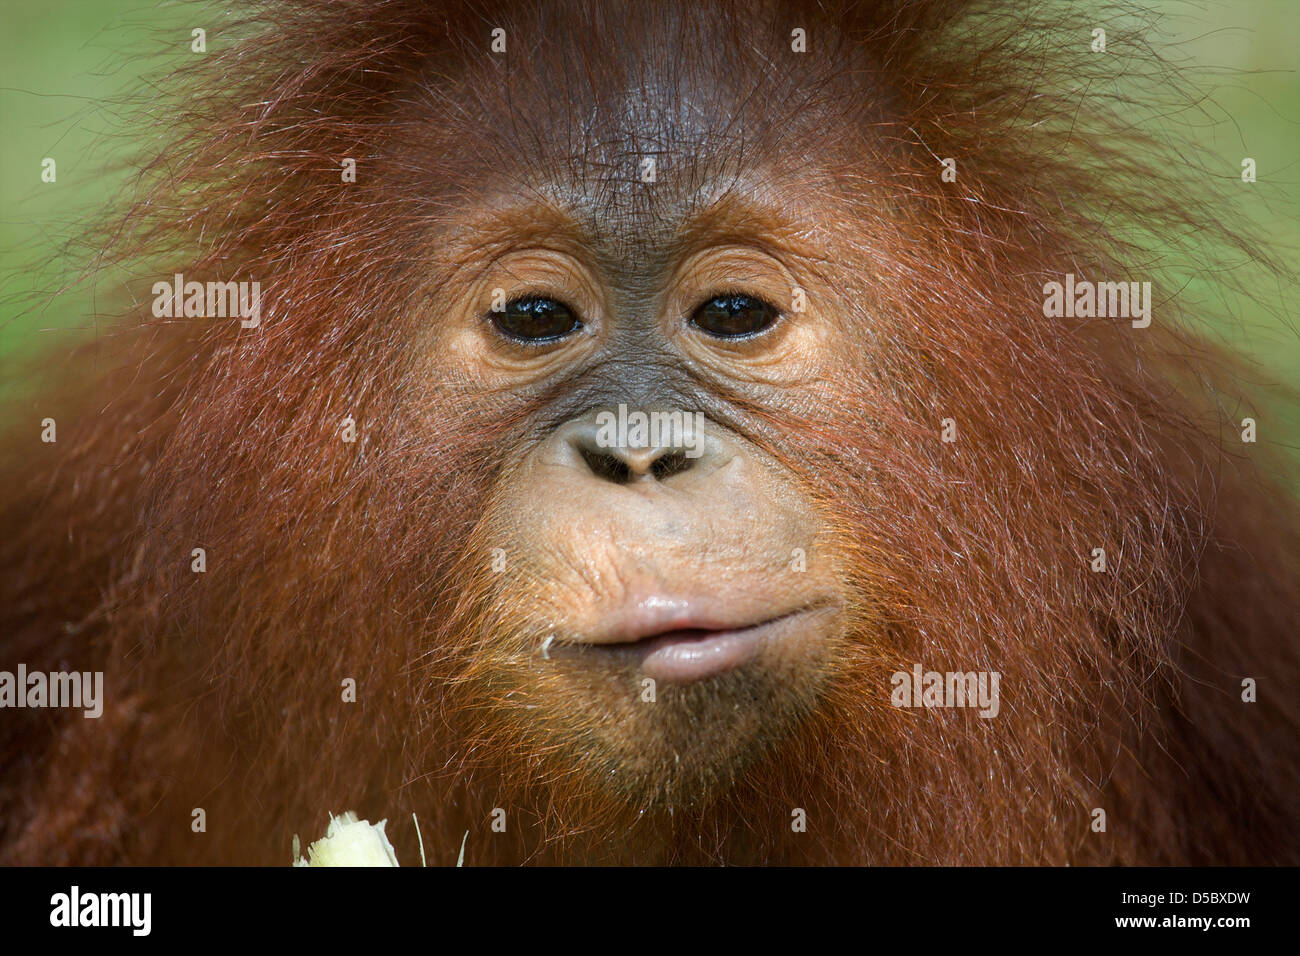 Orangutan, Juvenile (Pongo pygmaeus), eating sugar cane. Nyaru Menteng Orangutan Reintroduction Project, Kalimantan, indonesia Stock Photo